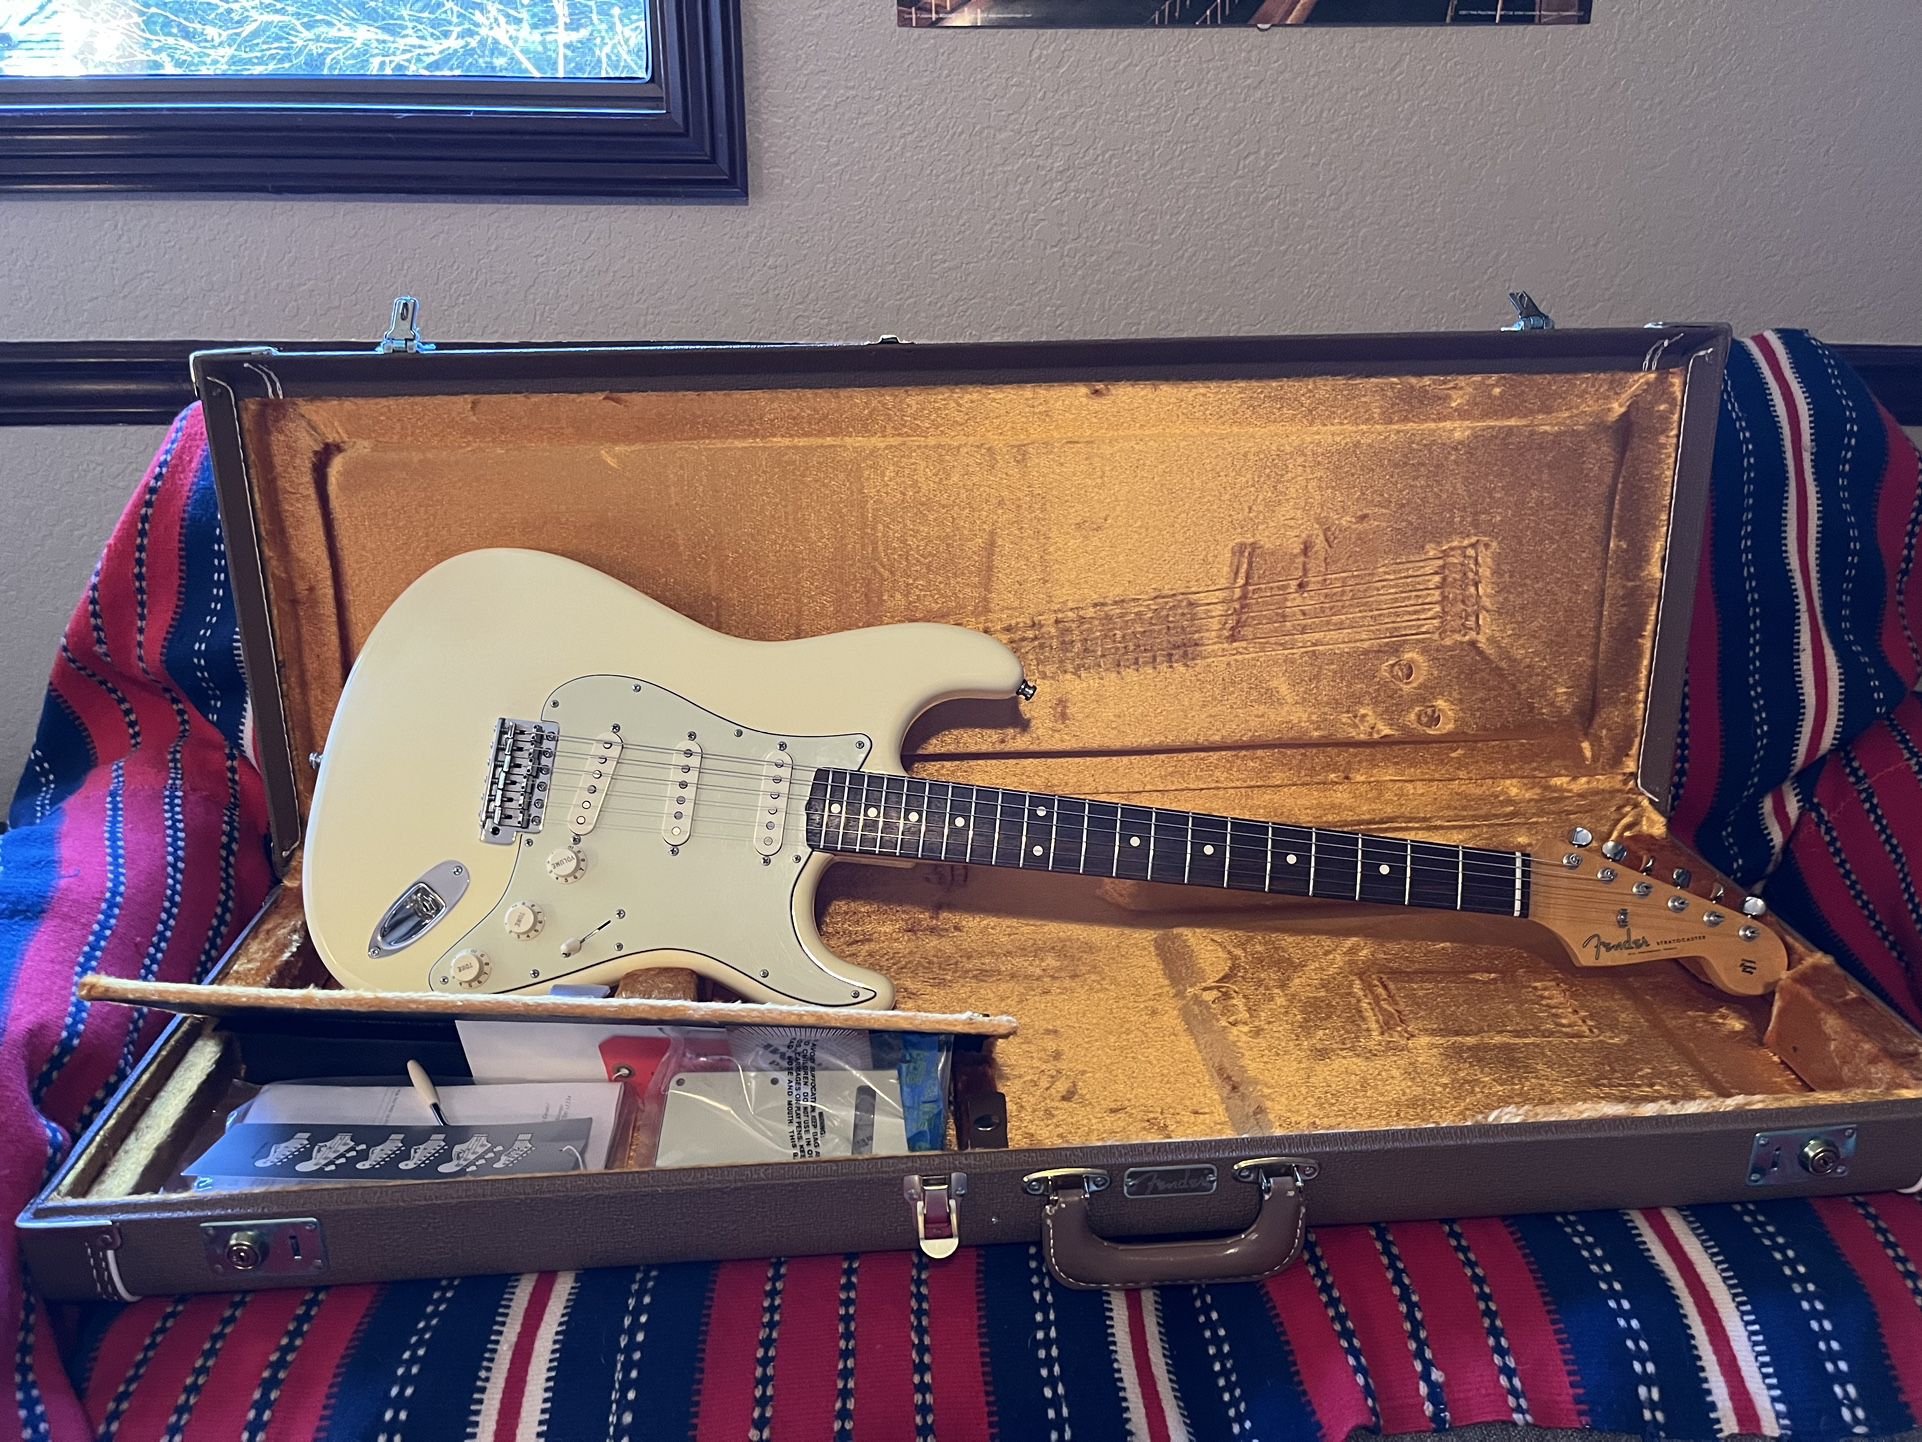 Fender '62 Hotrod Vintage Stratocaster Electric Guitar - Plek’d